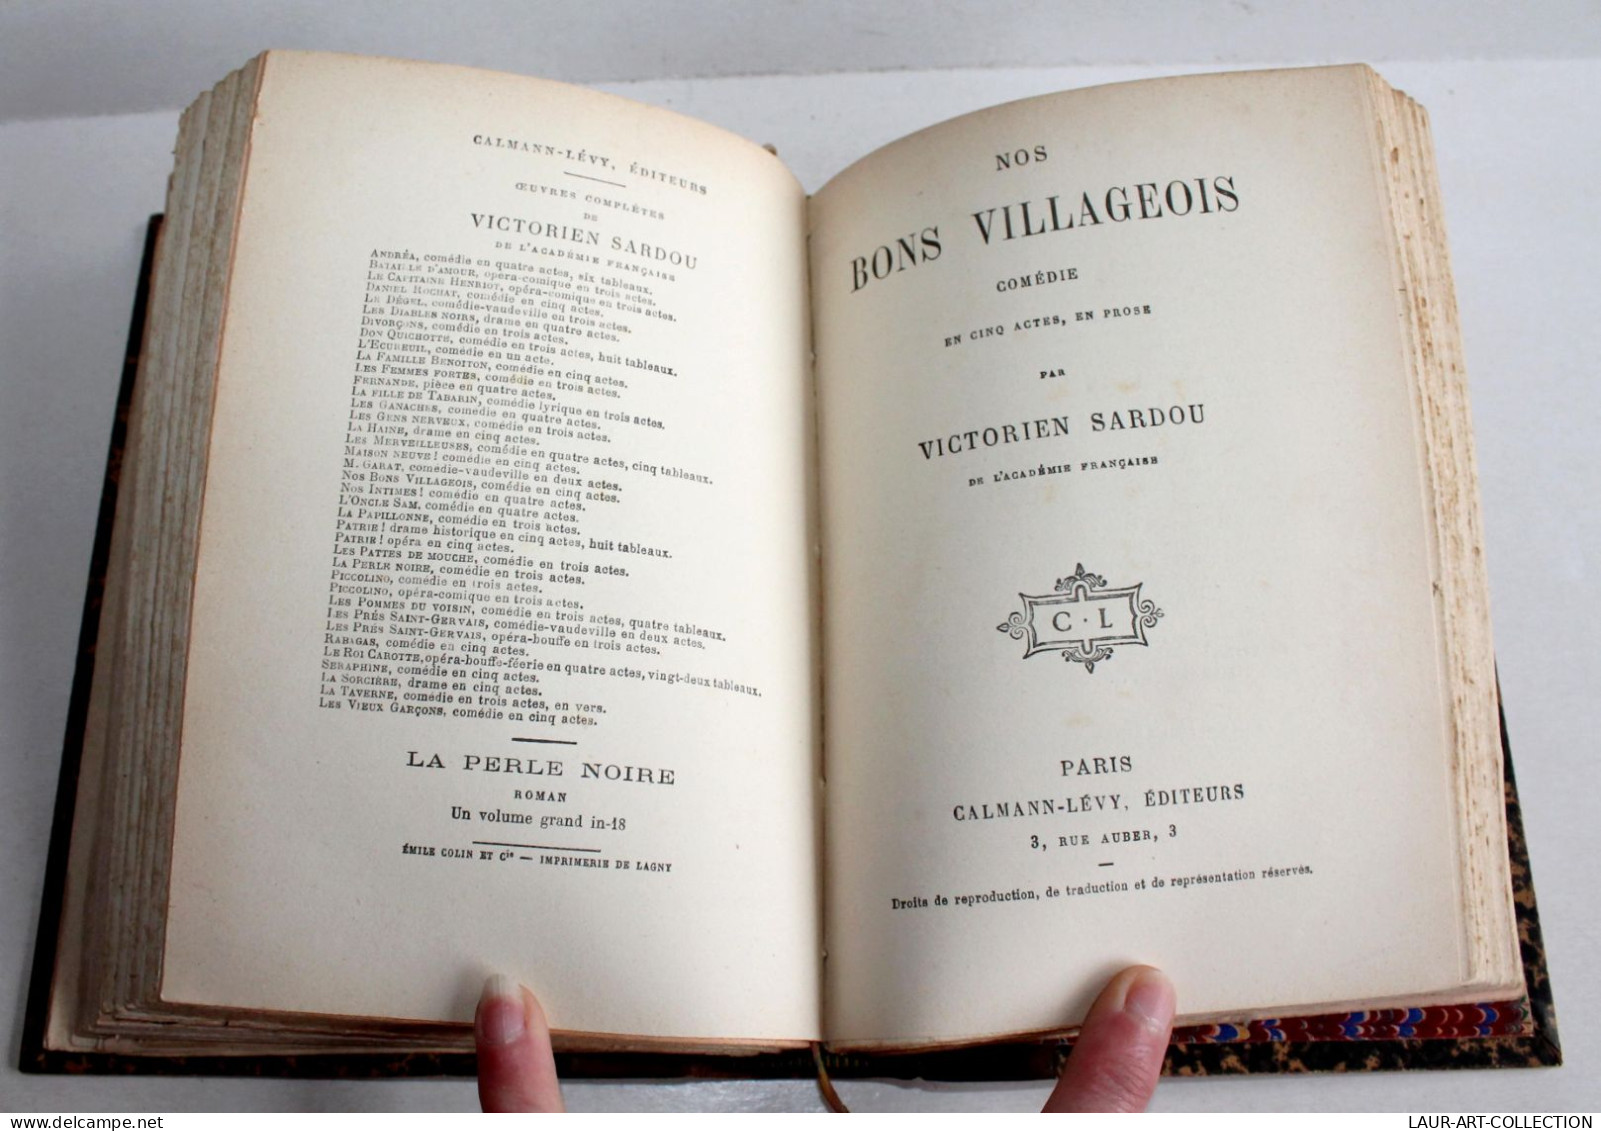 RARE! VICTORIEN SARDOU De CLARETIE + NOS BONS VILLAGEOIS COMEDIE 1883 THEATRE / ANCIEN LIVRE XIXe SIECLE (2603.42) - Autori Francesi